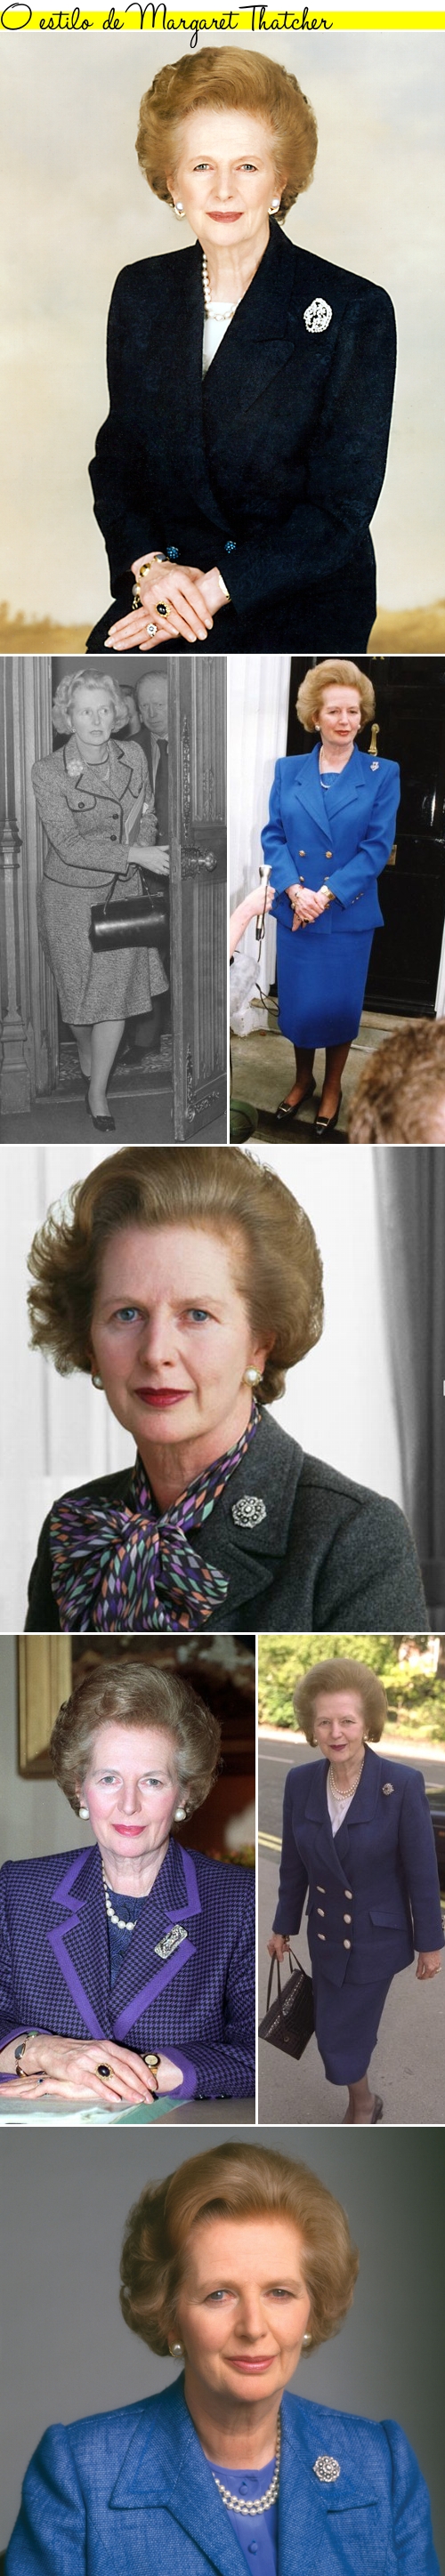 Margaret Thatcher1